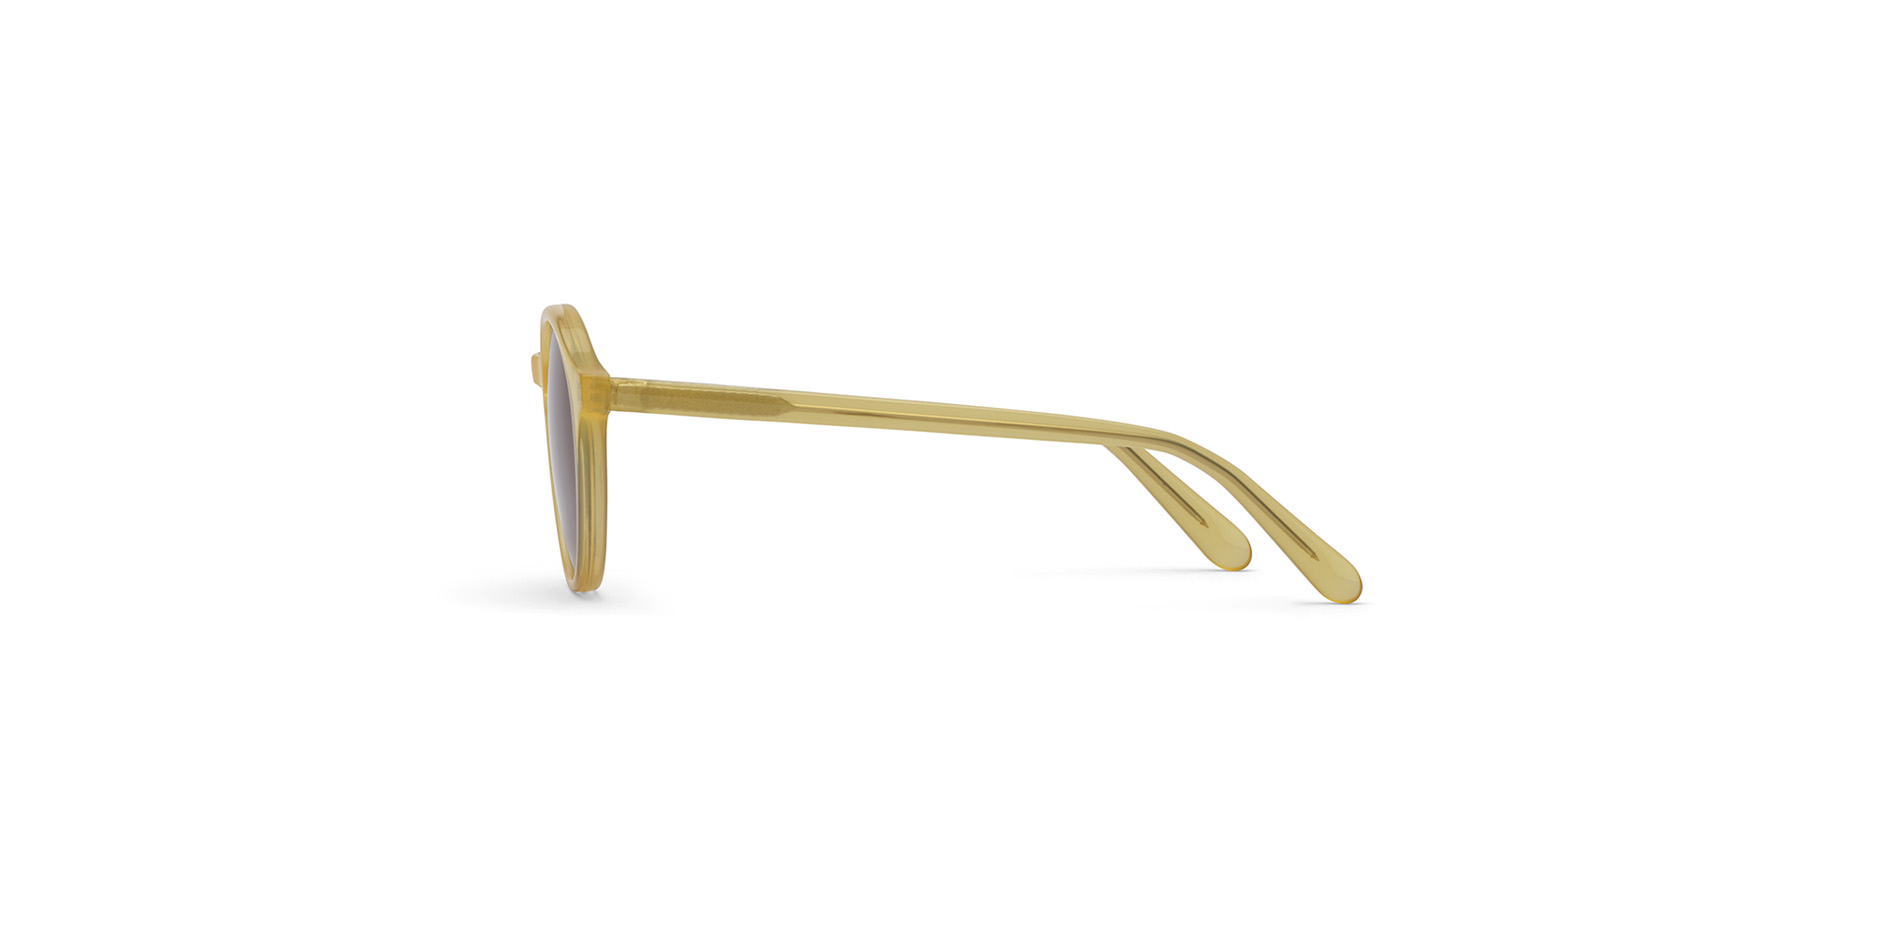 Modische Damen-Sonnenbrille aus Kunststoff in Pantoform,  ABC 073 SUN FA LEO